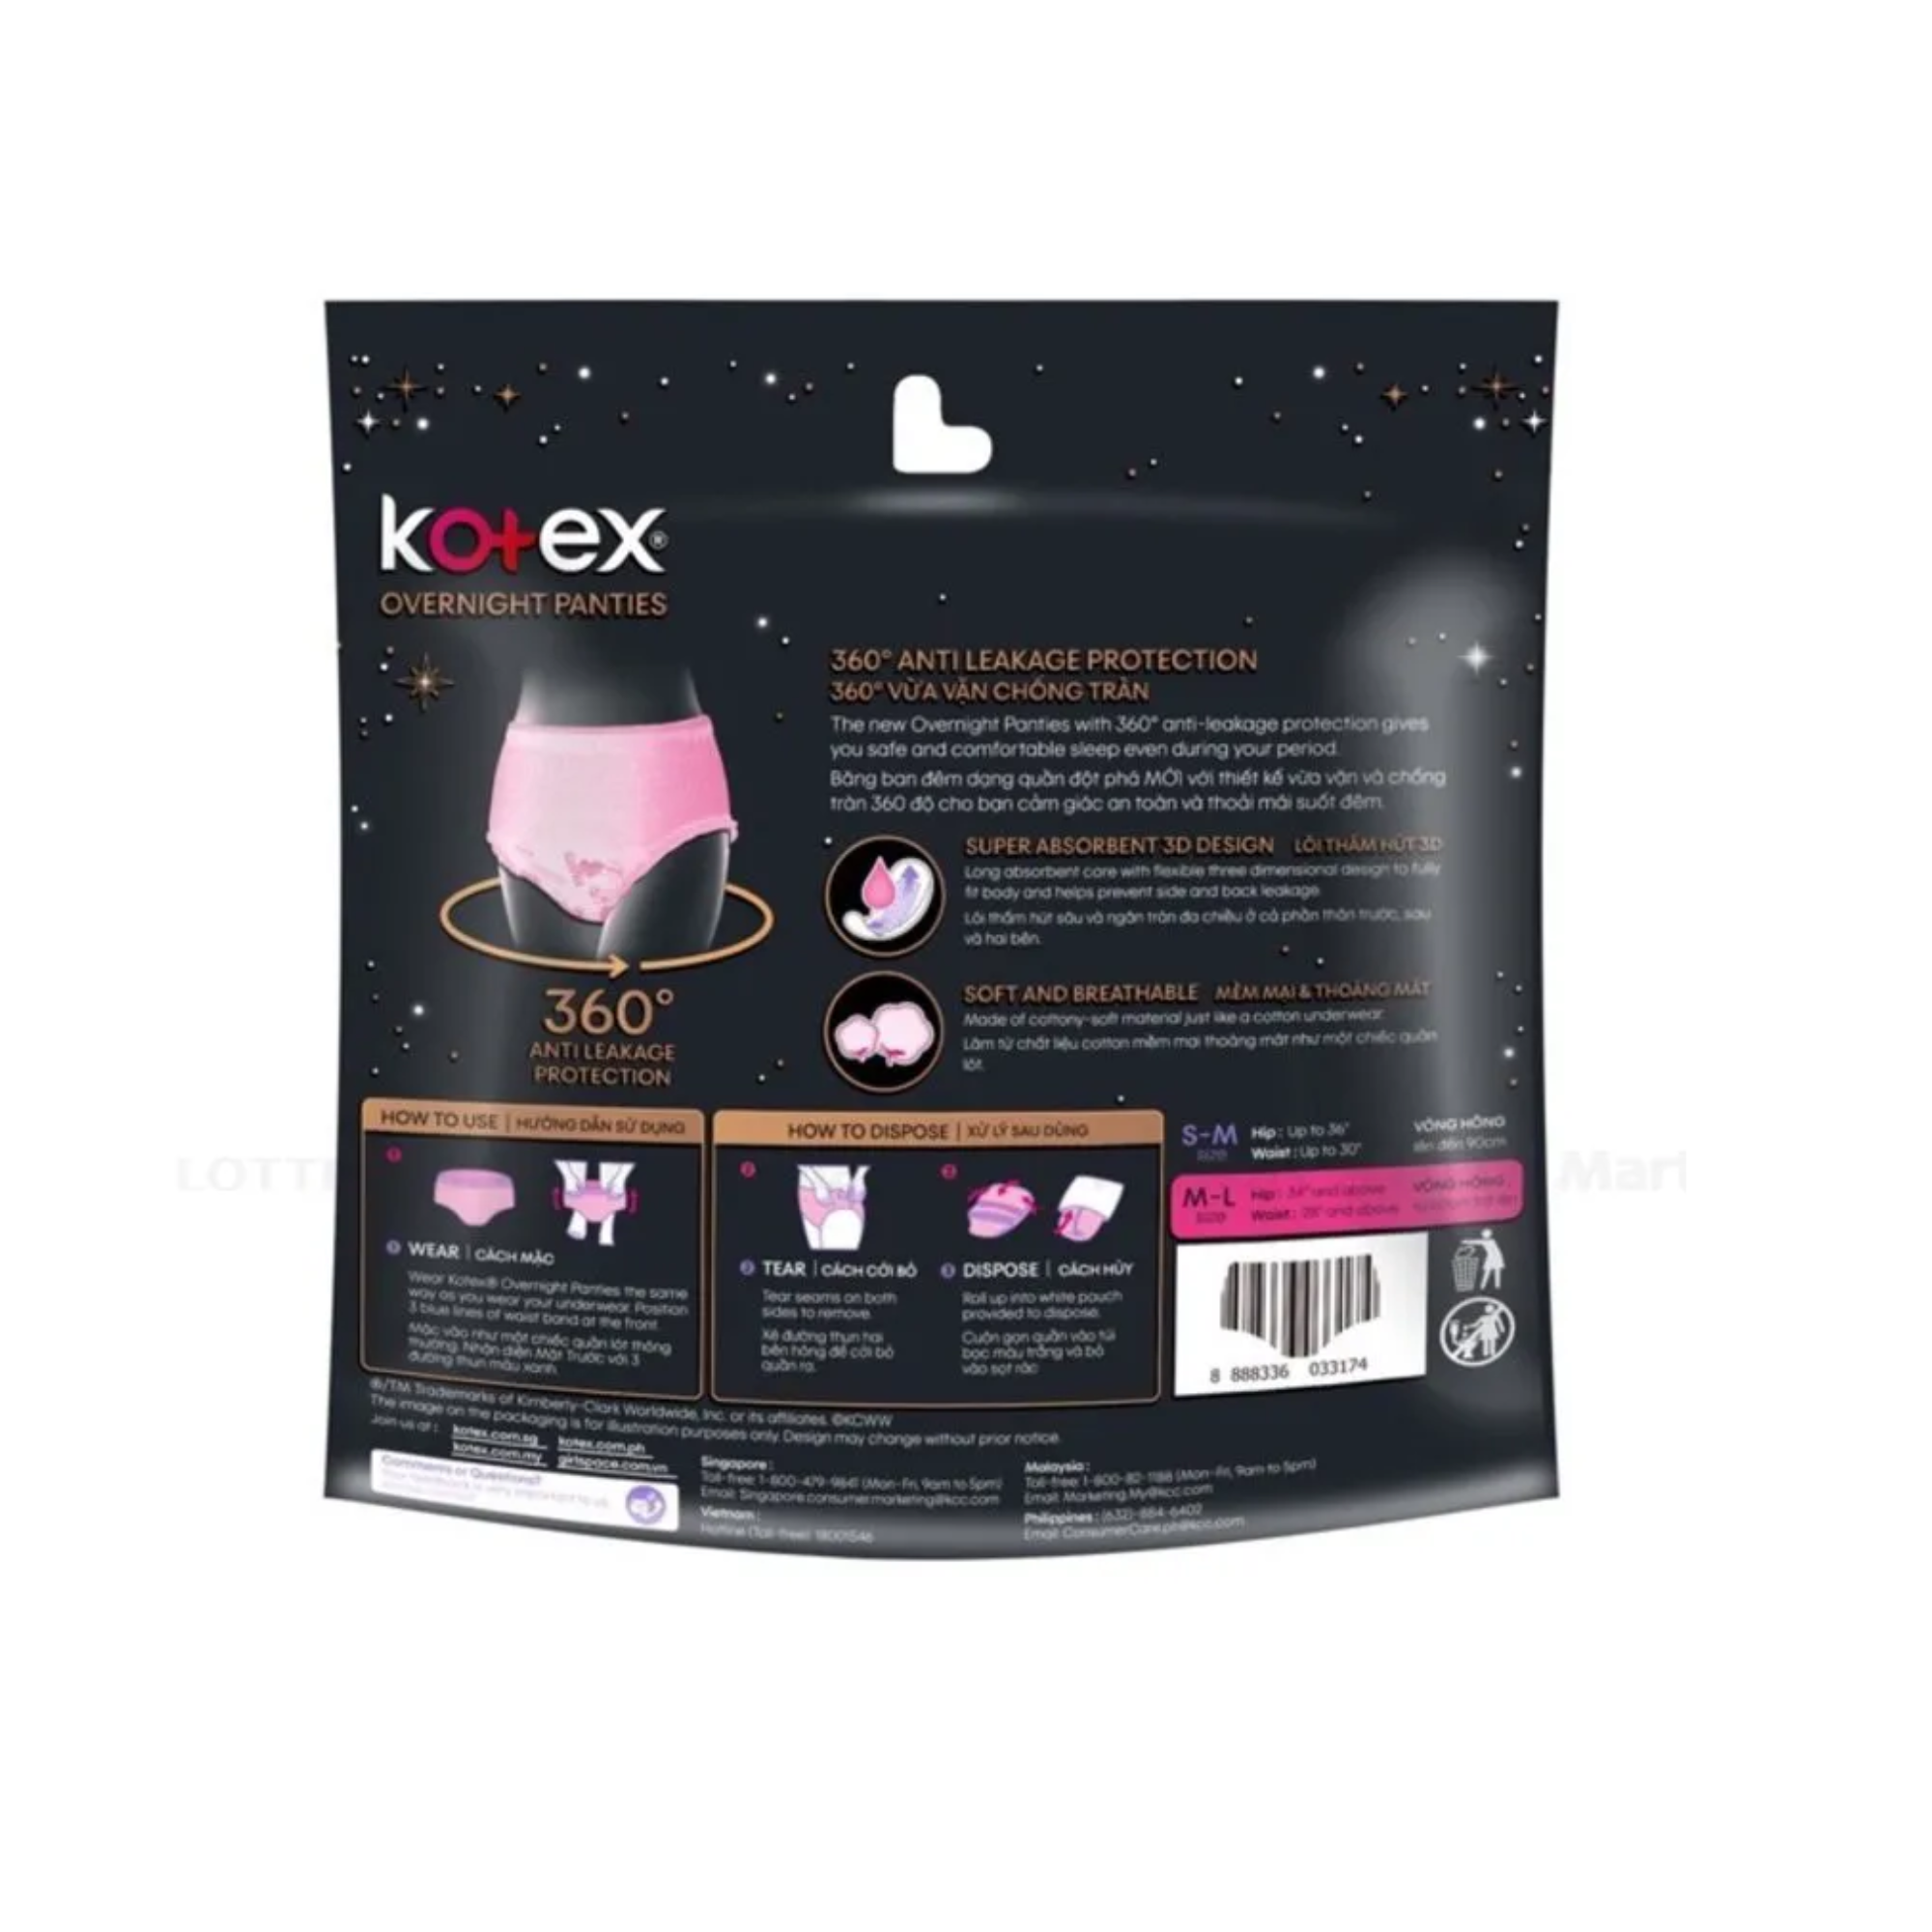   Combo 4 băng vệ sinh Kotex đêm dạng quần cỡ M/L (2 miếng/Gói)